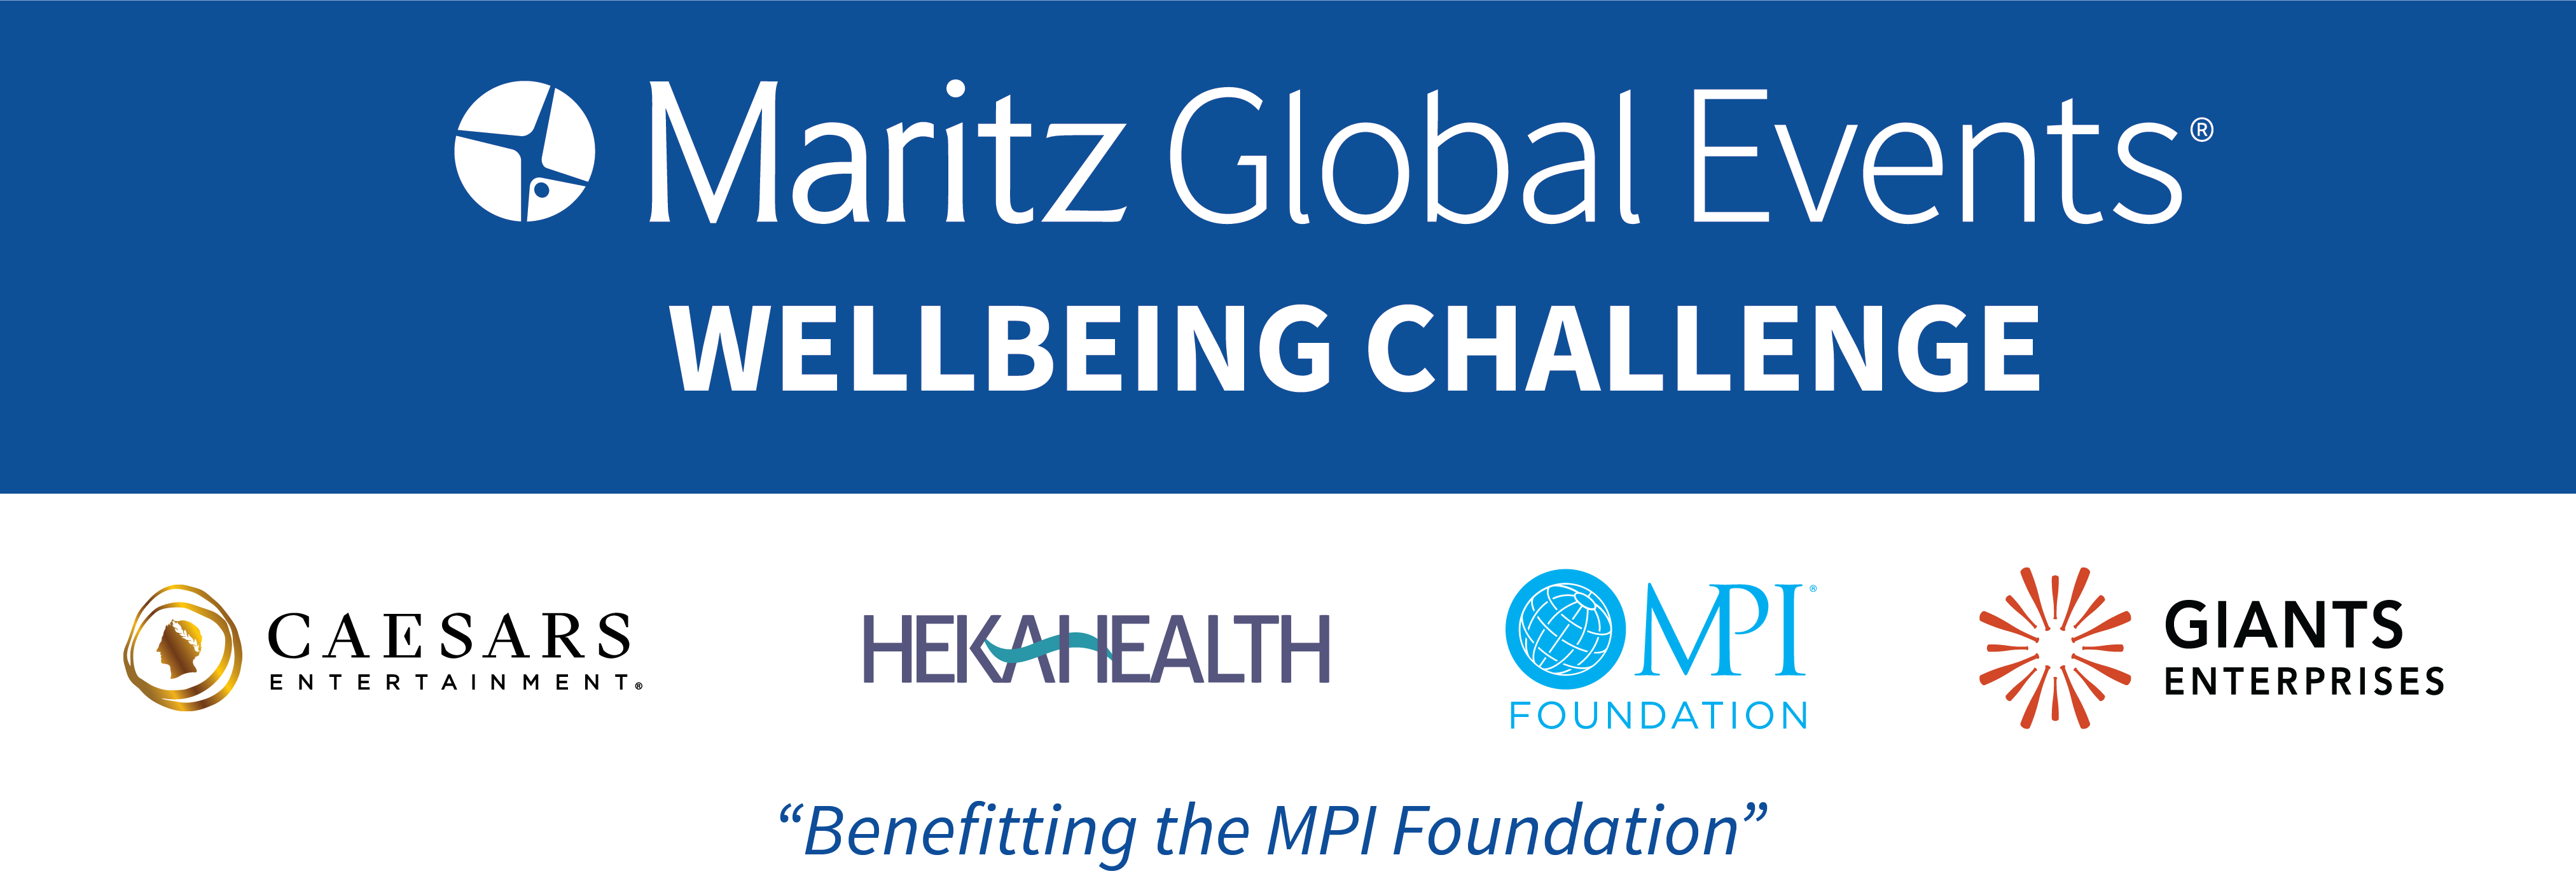 Maritz WellBeing Challenge